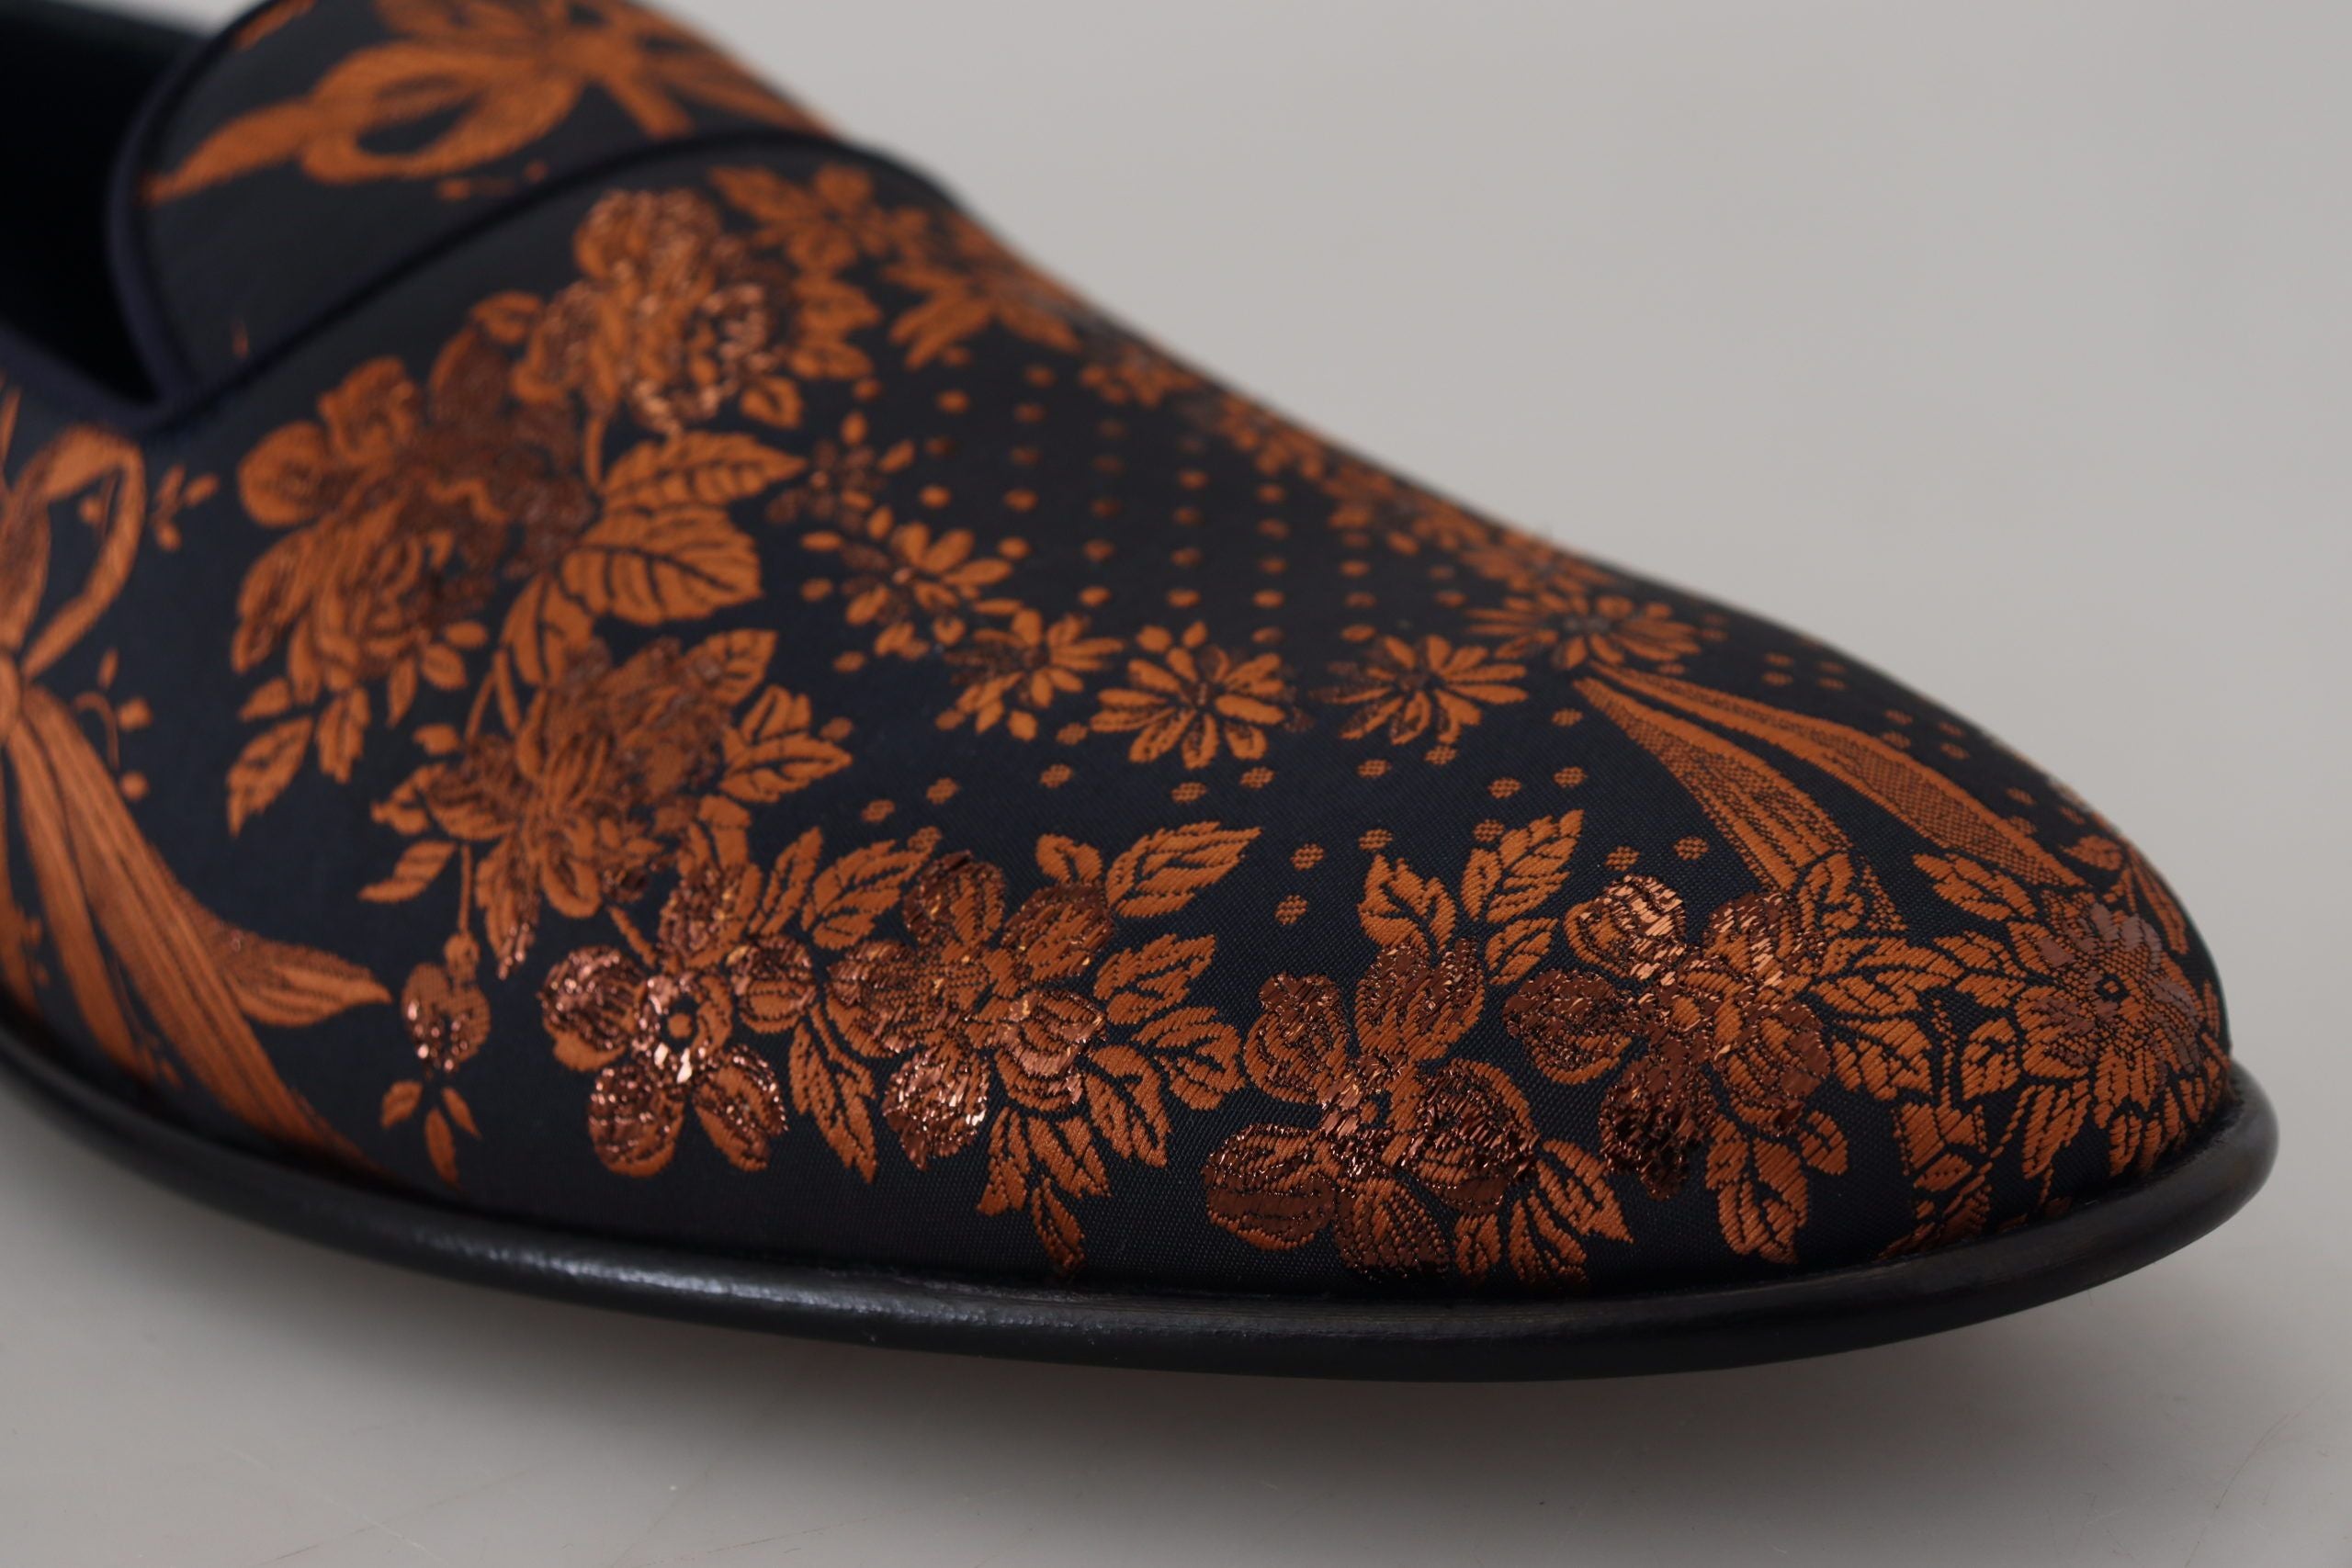 Dolce & Gabbana Elegant Floral Slip-On Loafers